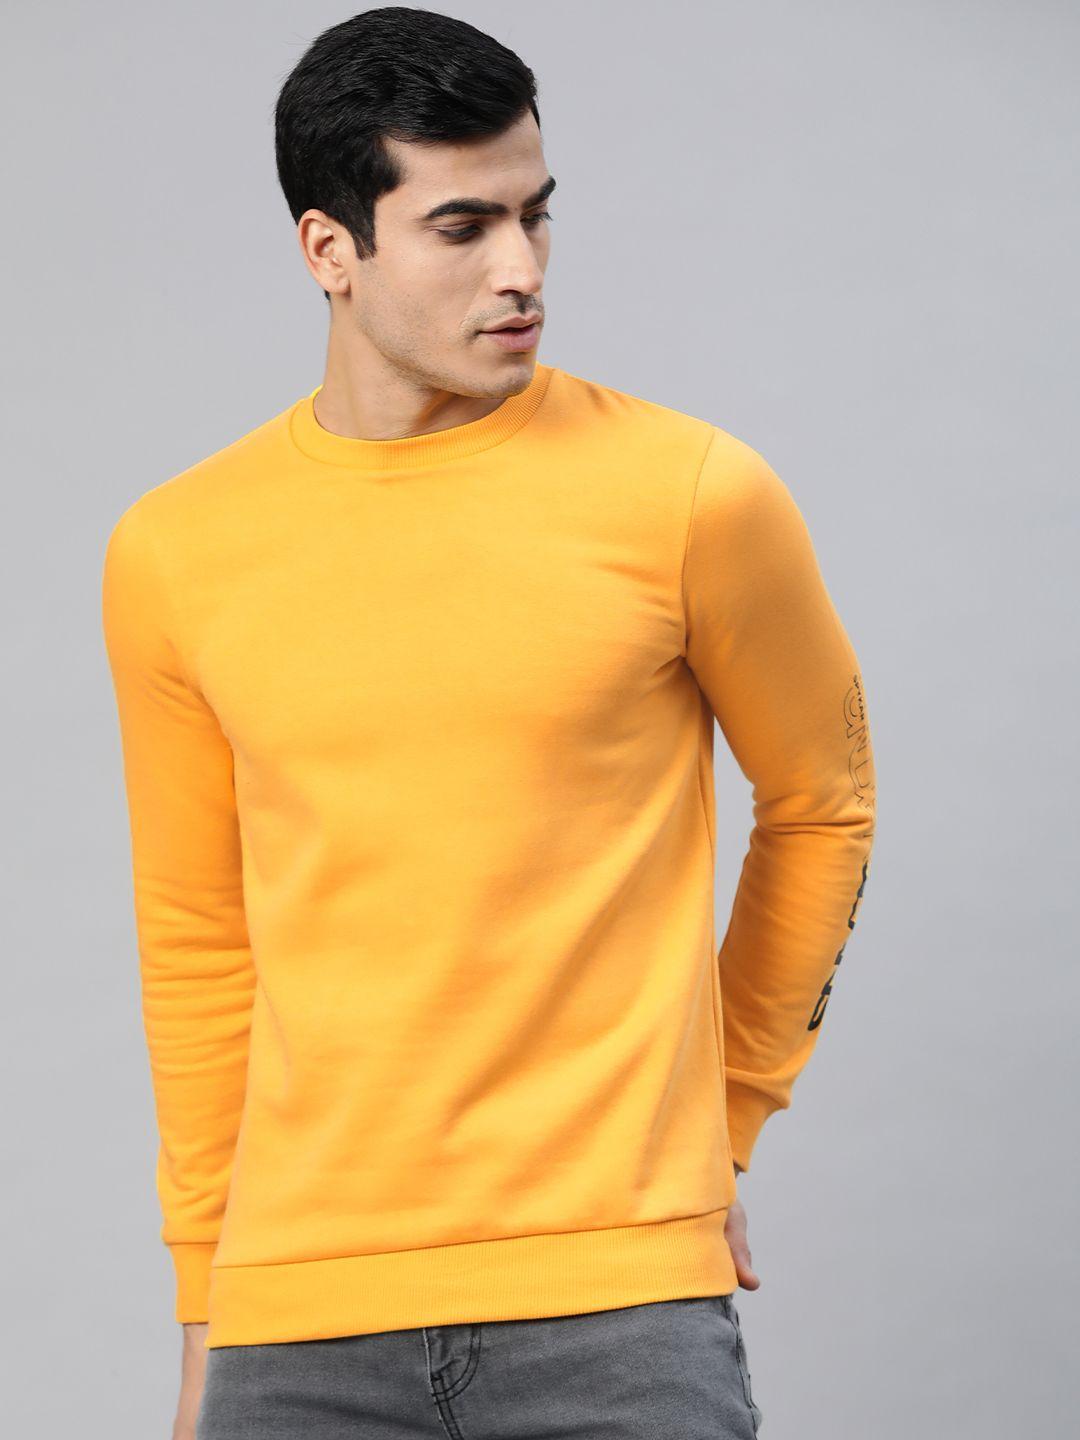 underjeans-by-spykar-men-mustard-yellow-solid-sweatshirt